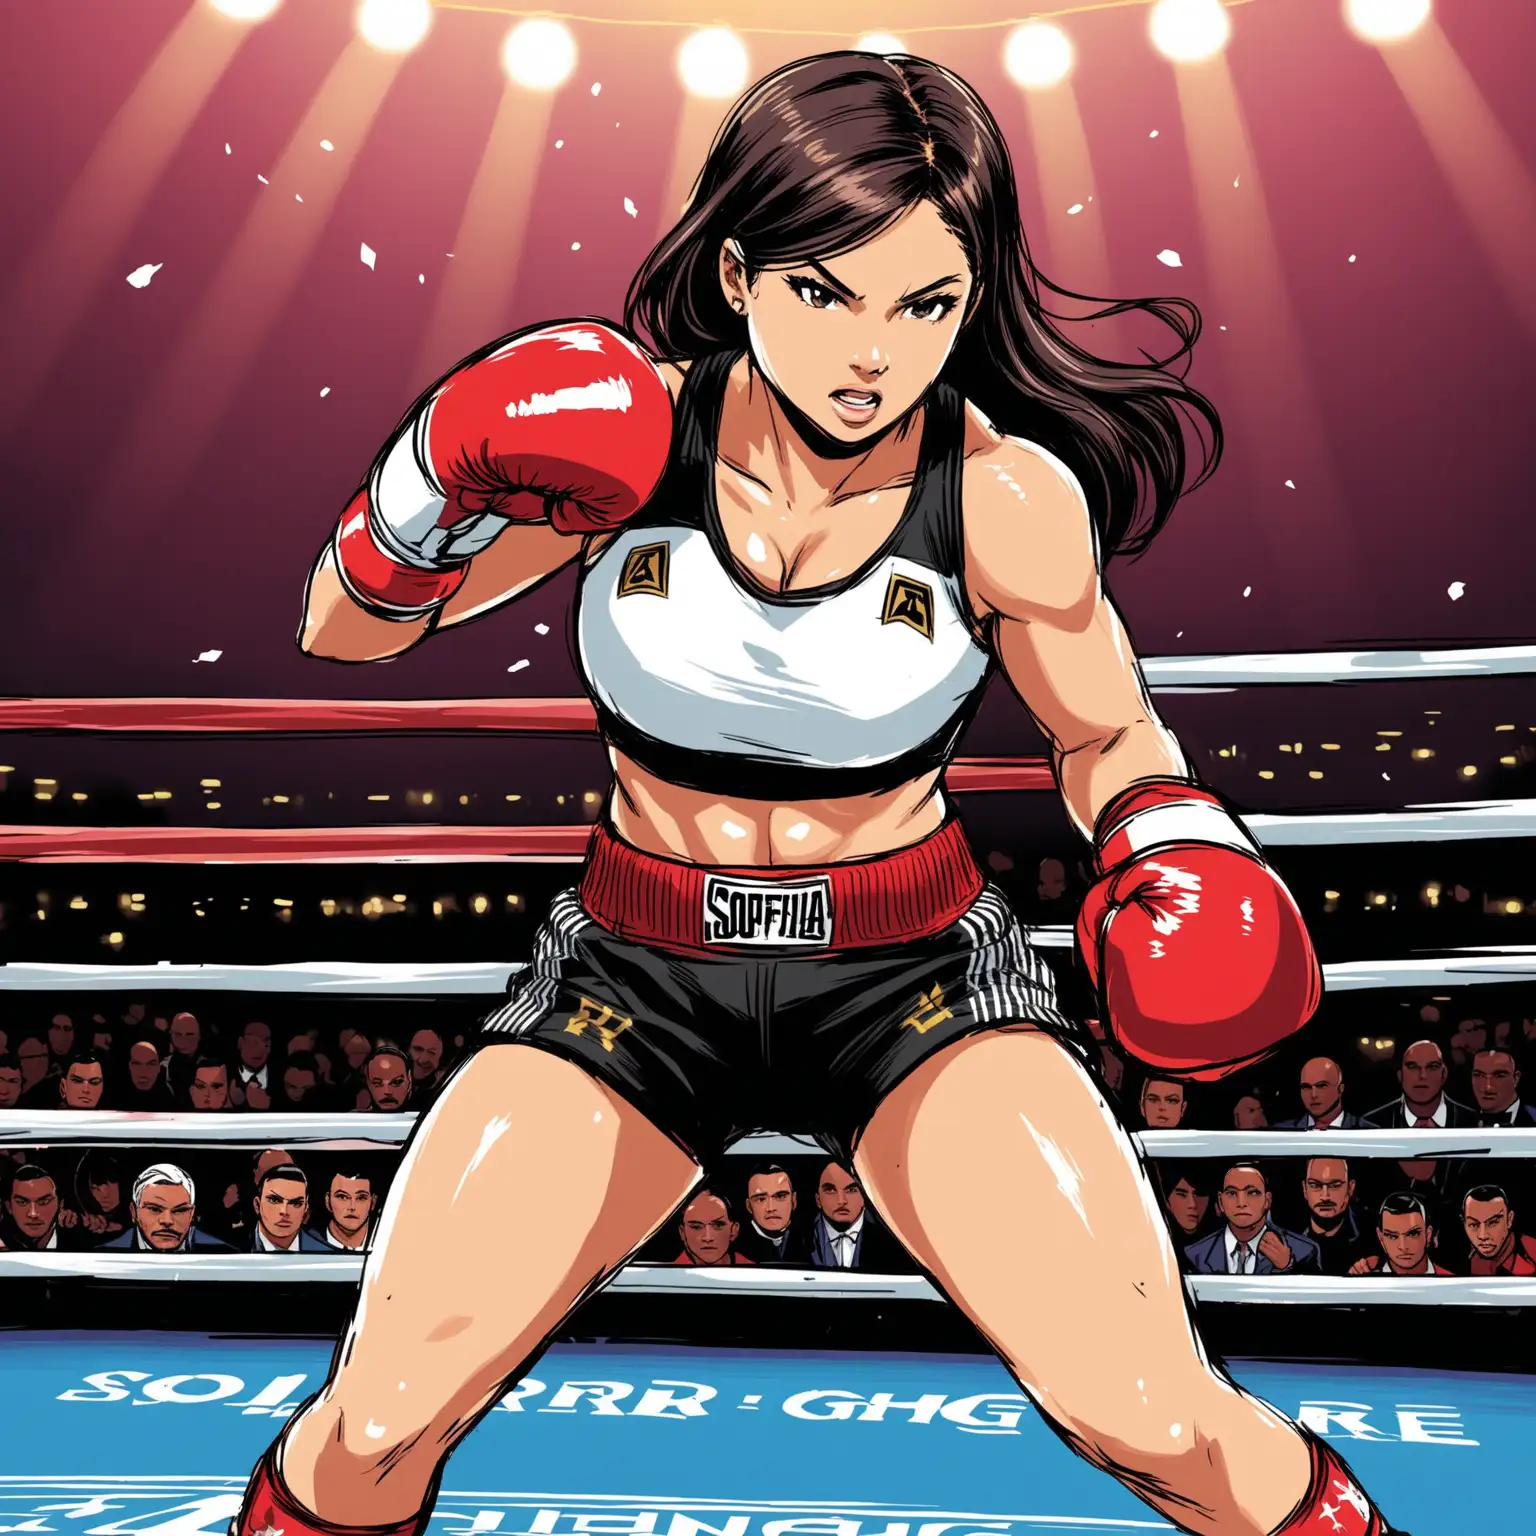 sur un style bande dessinée :  
Sofia Rodriguez est une boxeuse rapide et agile, surnommée "L'Éclair" pour sa vitesse sur le ring.
Avec sa capacité à esquiver habilement les coups et à contre-attaquer avec précision, elle surprend souvent ses adversaires avec des combinaisons rapides et dévastatrices.
Originaire d'un quartier populaire, Sofia a dû lutter contre les stéréotypes de genre pour se faire une place dans le monde de la boxe, mais elle a prouvé maintes fois qu'elle était une adversaire redoutable.